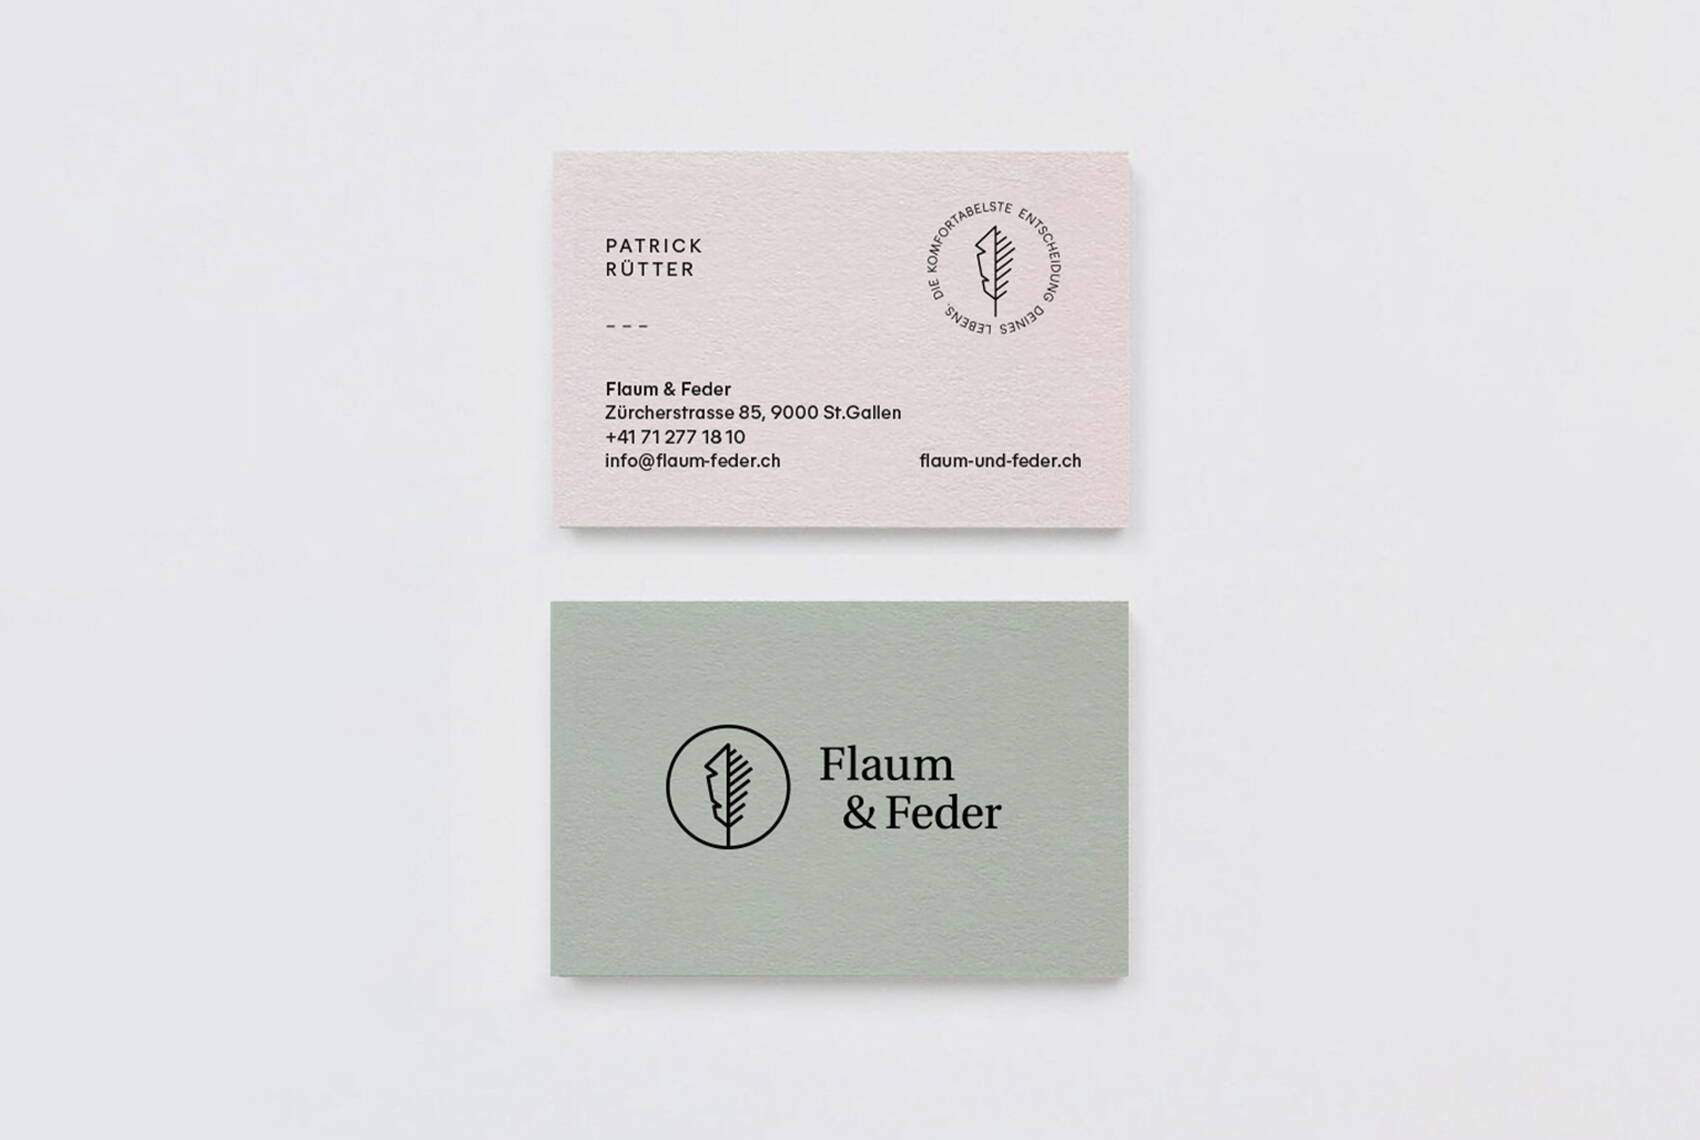 gabriela-martinelli-design-flaum-und-feder-corporate-design-visitenkarten.jpg